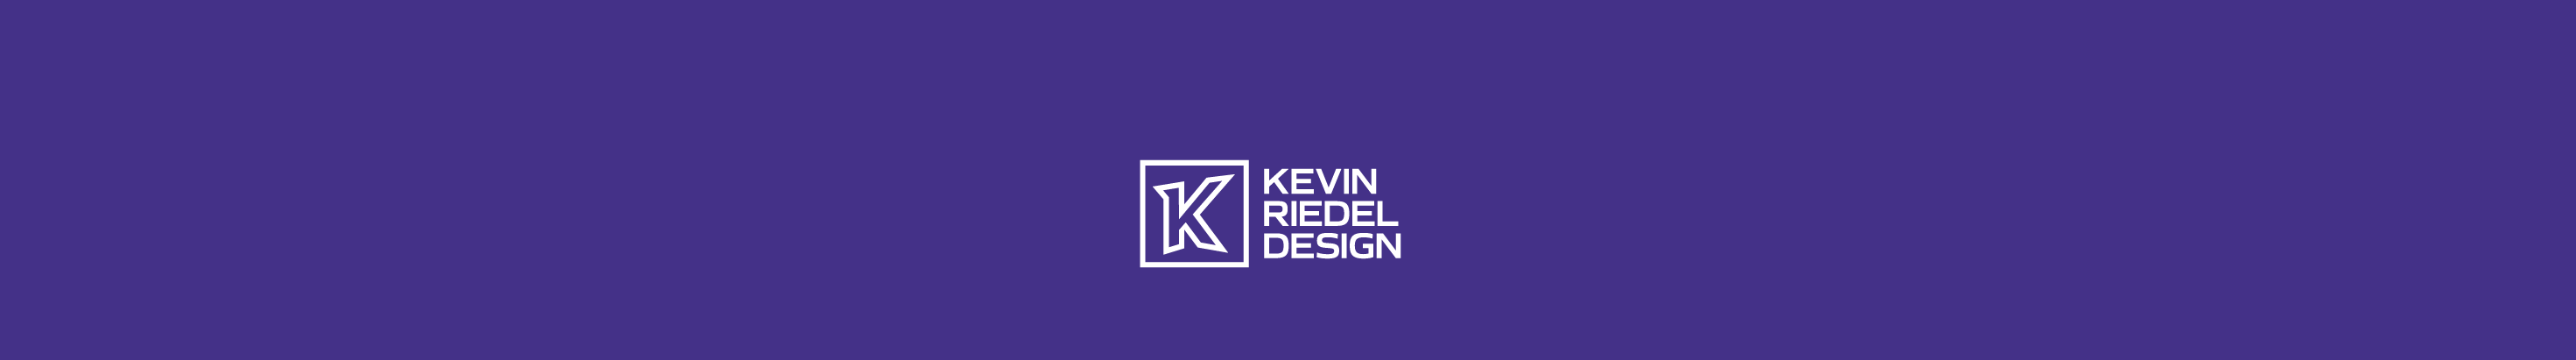 Banner de perfil de Kevin Riedel